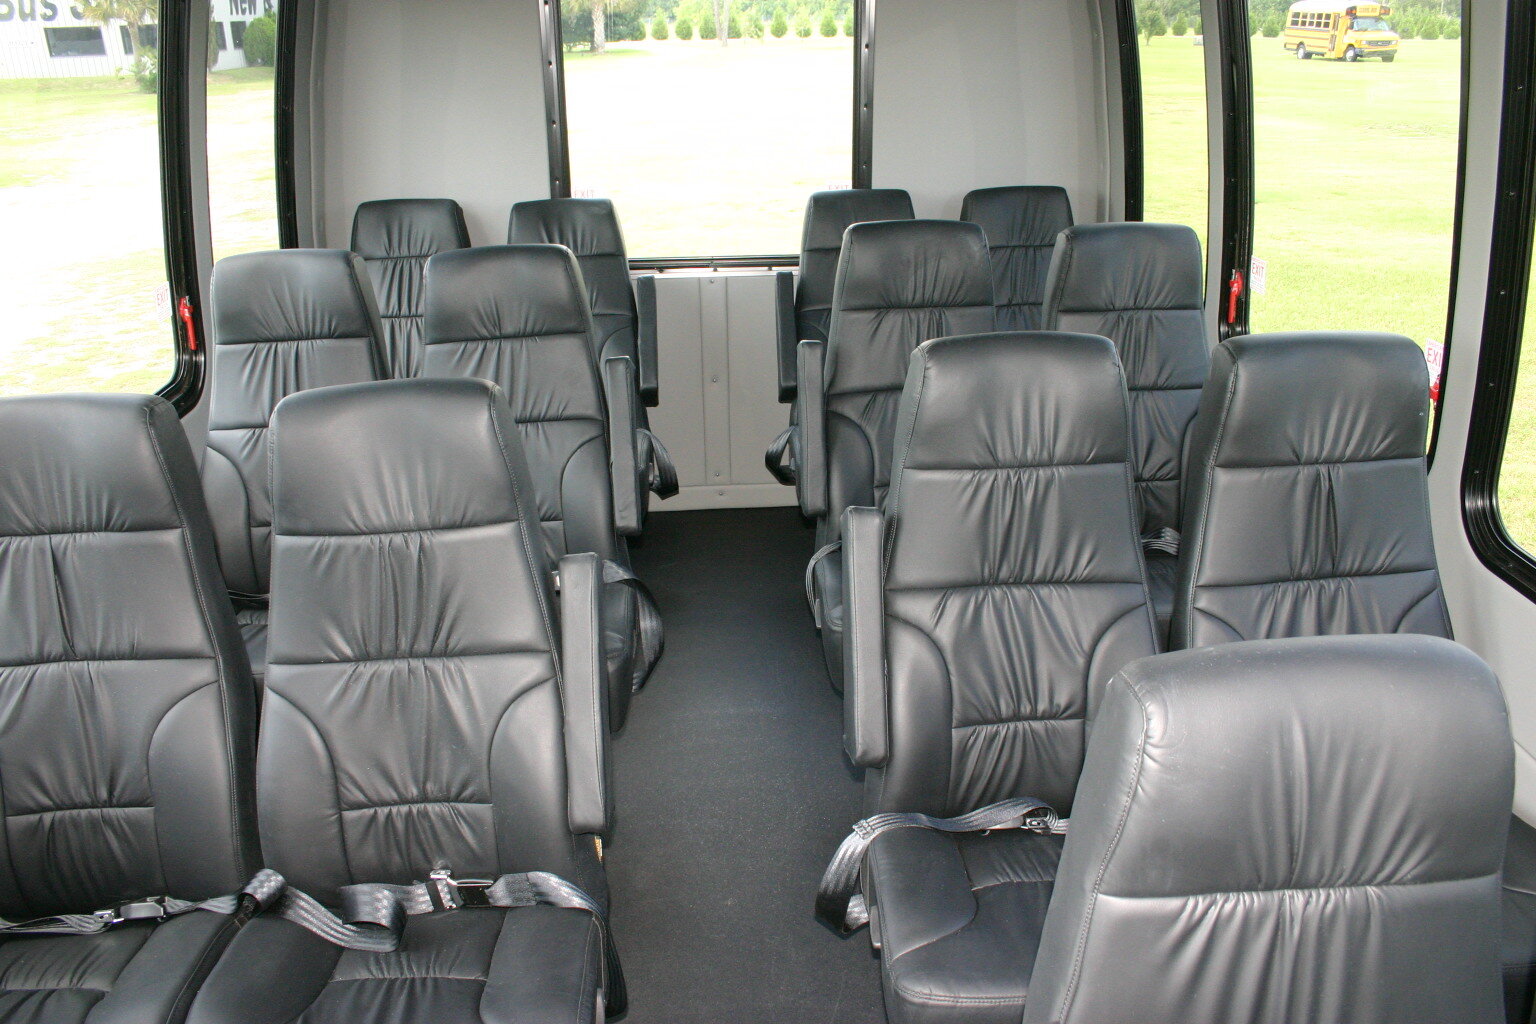 Exec coach interior photo.JPG